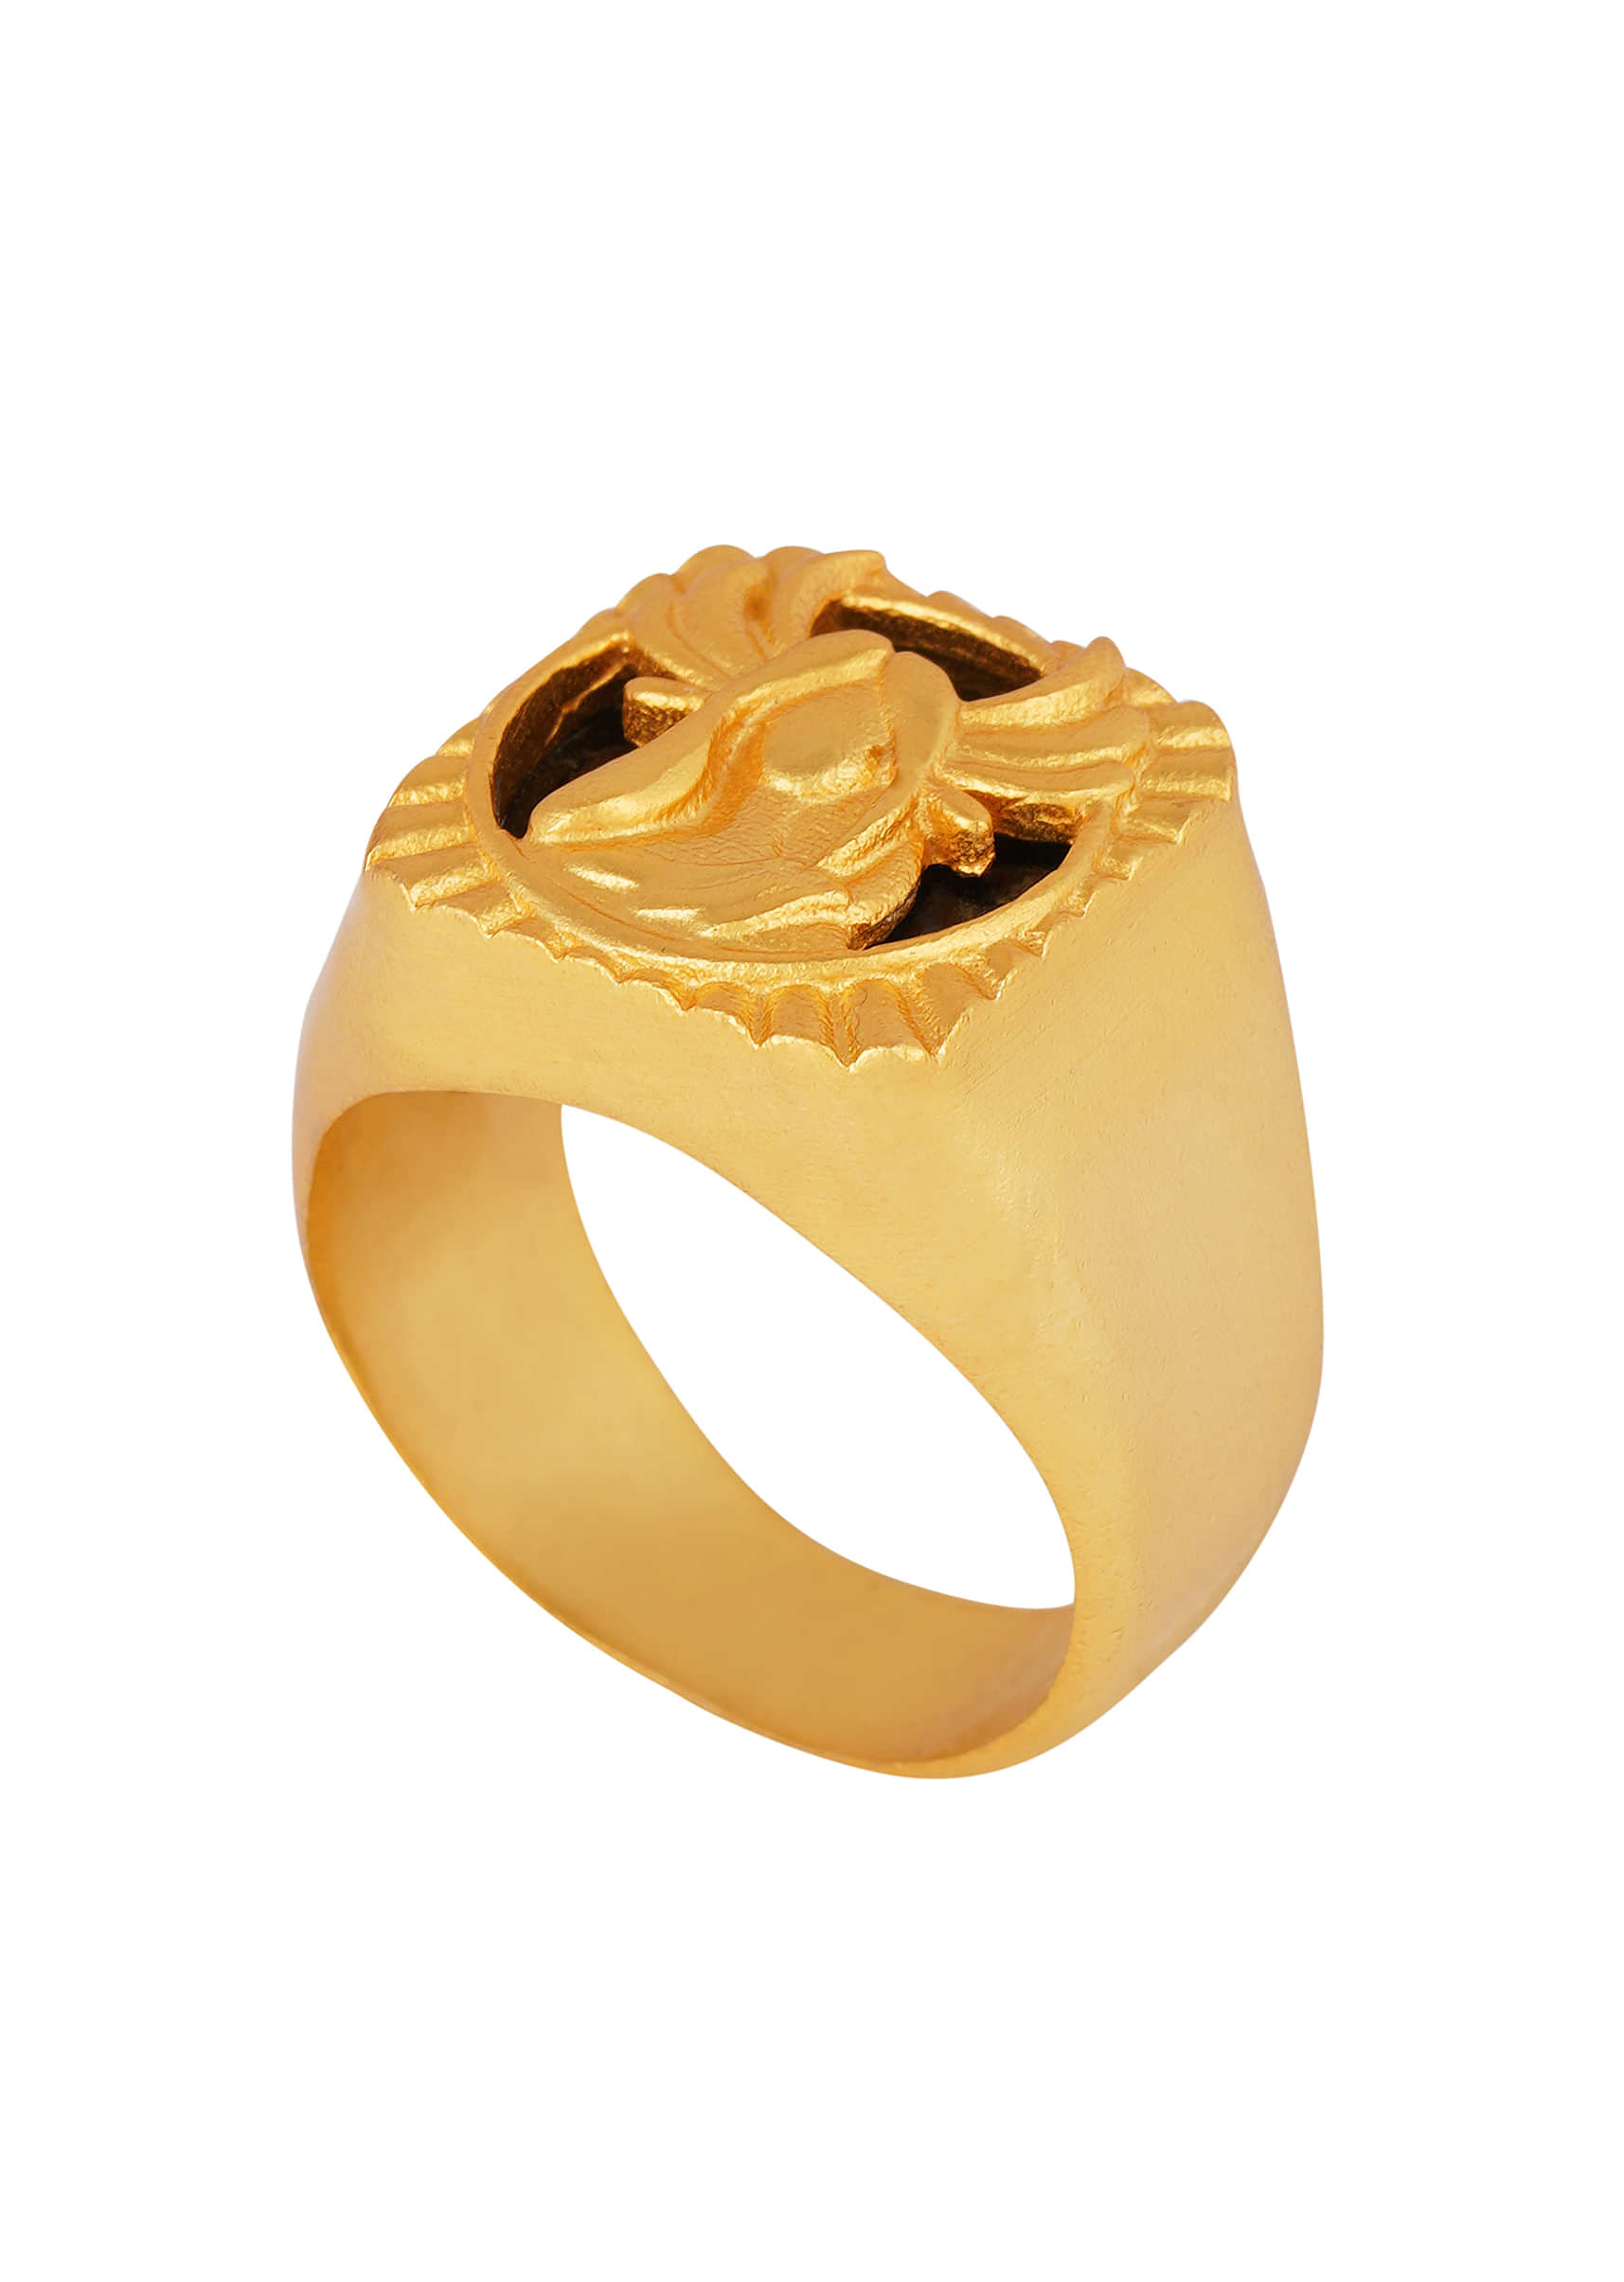 22Kt Gold Plated Spirit Of The Virgin - Virgo Ring By Zariin